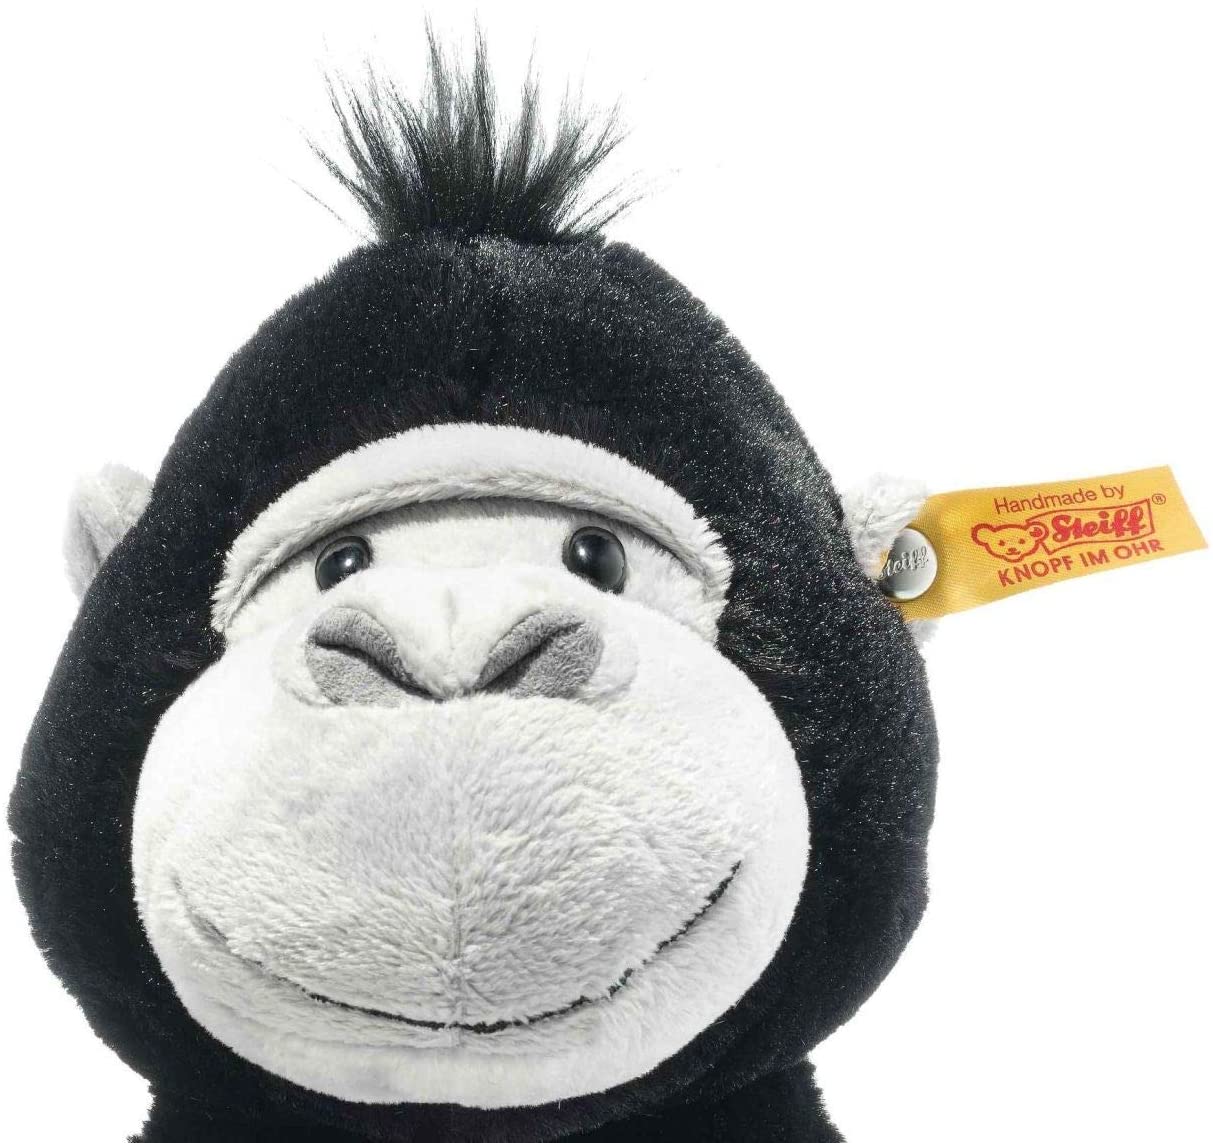 Steiff 069116 Original Plüschtier Bongy Gorilla, Soft Cuddly Friends Kuscheltier ca. 30 cm, Markenplüsch mit Knopf im Ohr, Schmusefreund für Babys von Geburt an, schwarz-hellgrau